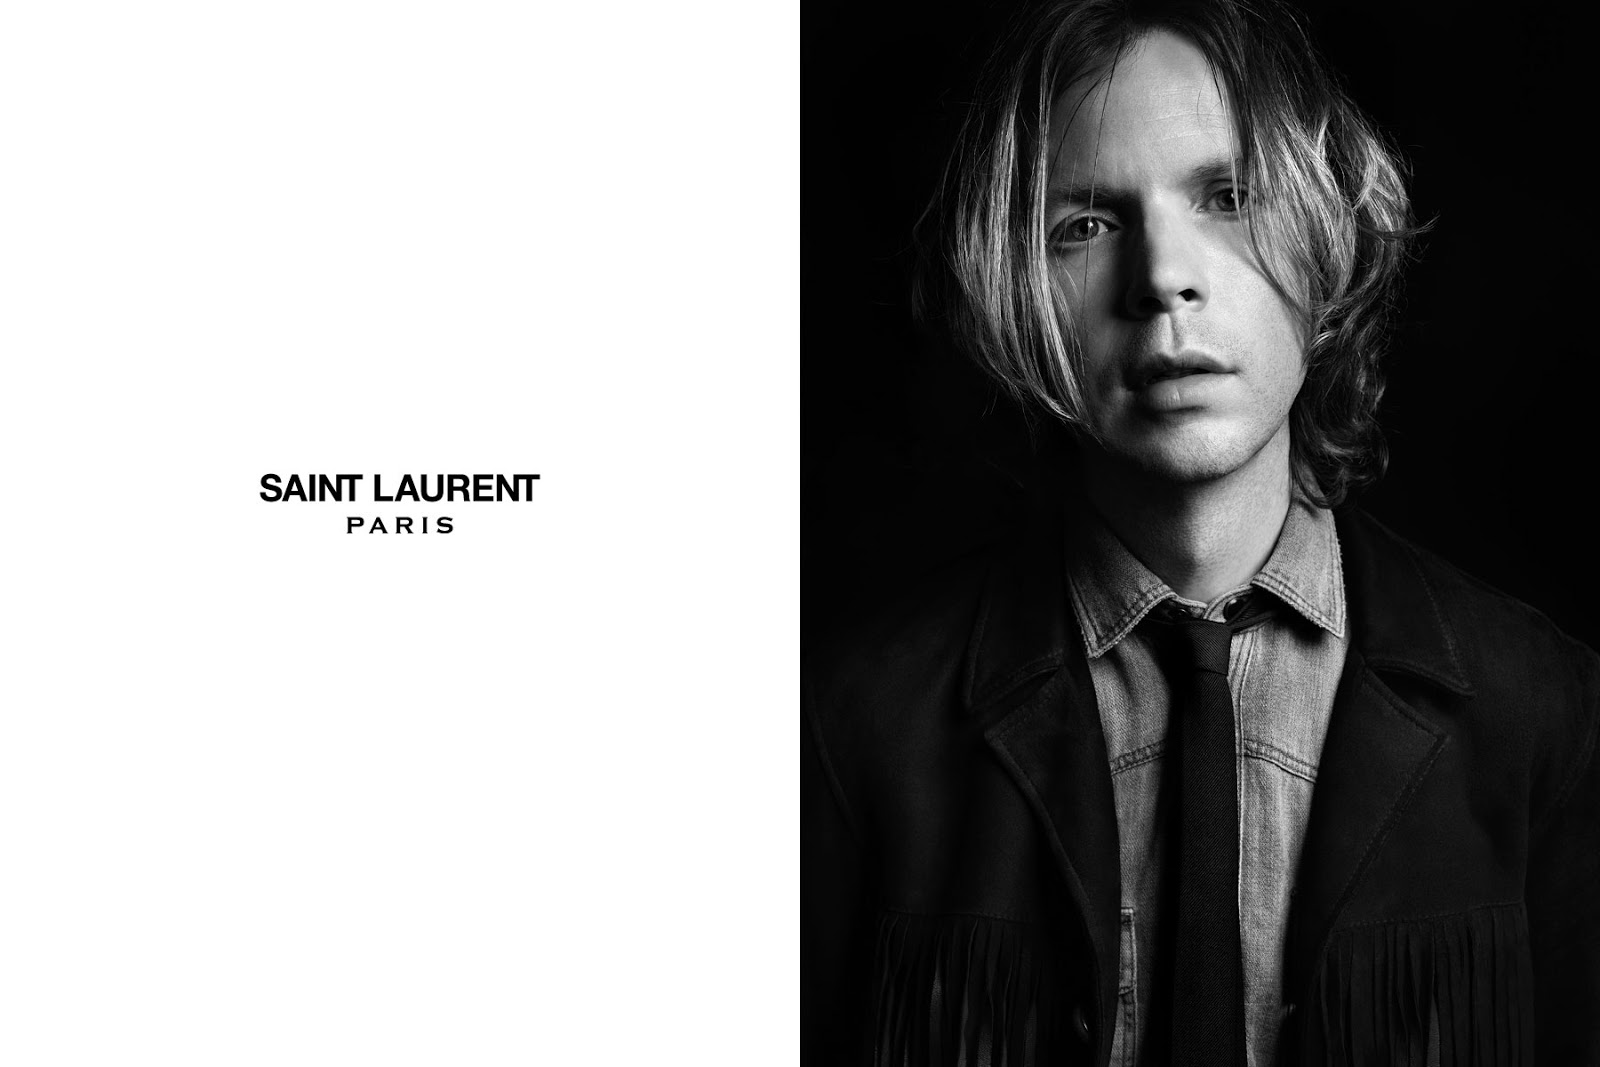 www.reneeruin.com: Saint Laurent's Spring 2013 Campaign | Part Deux ...